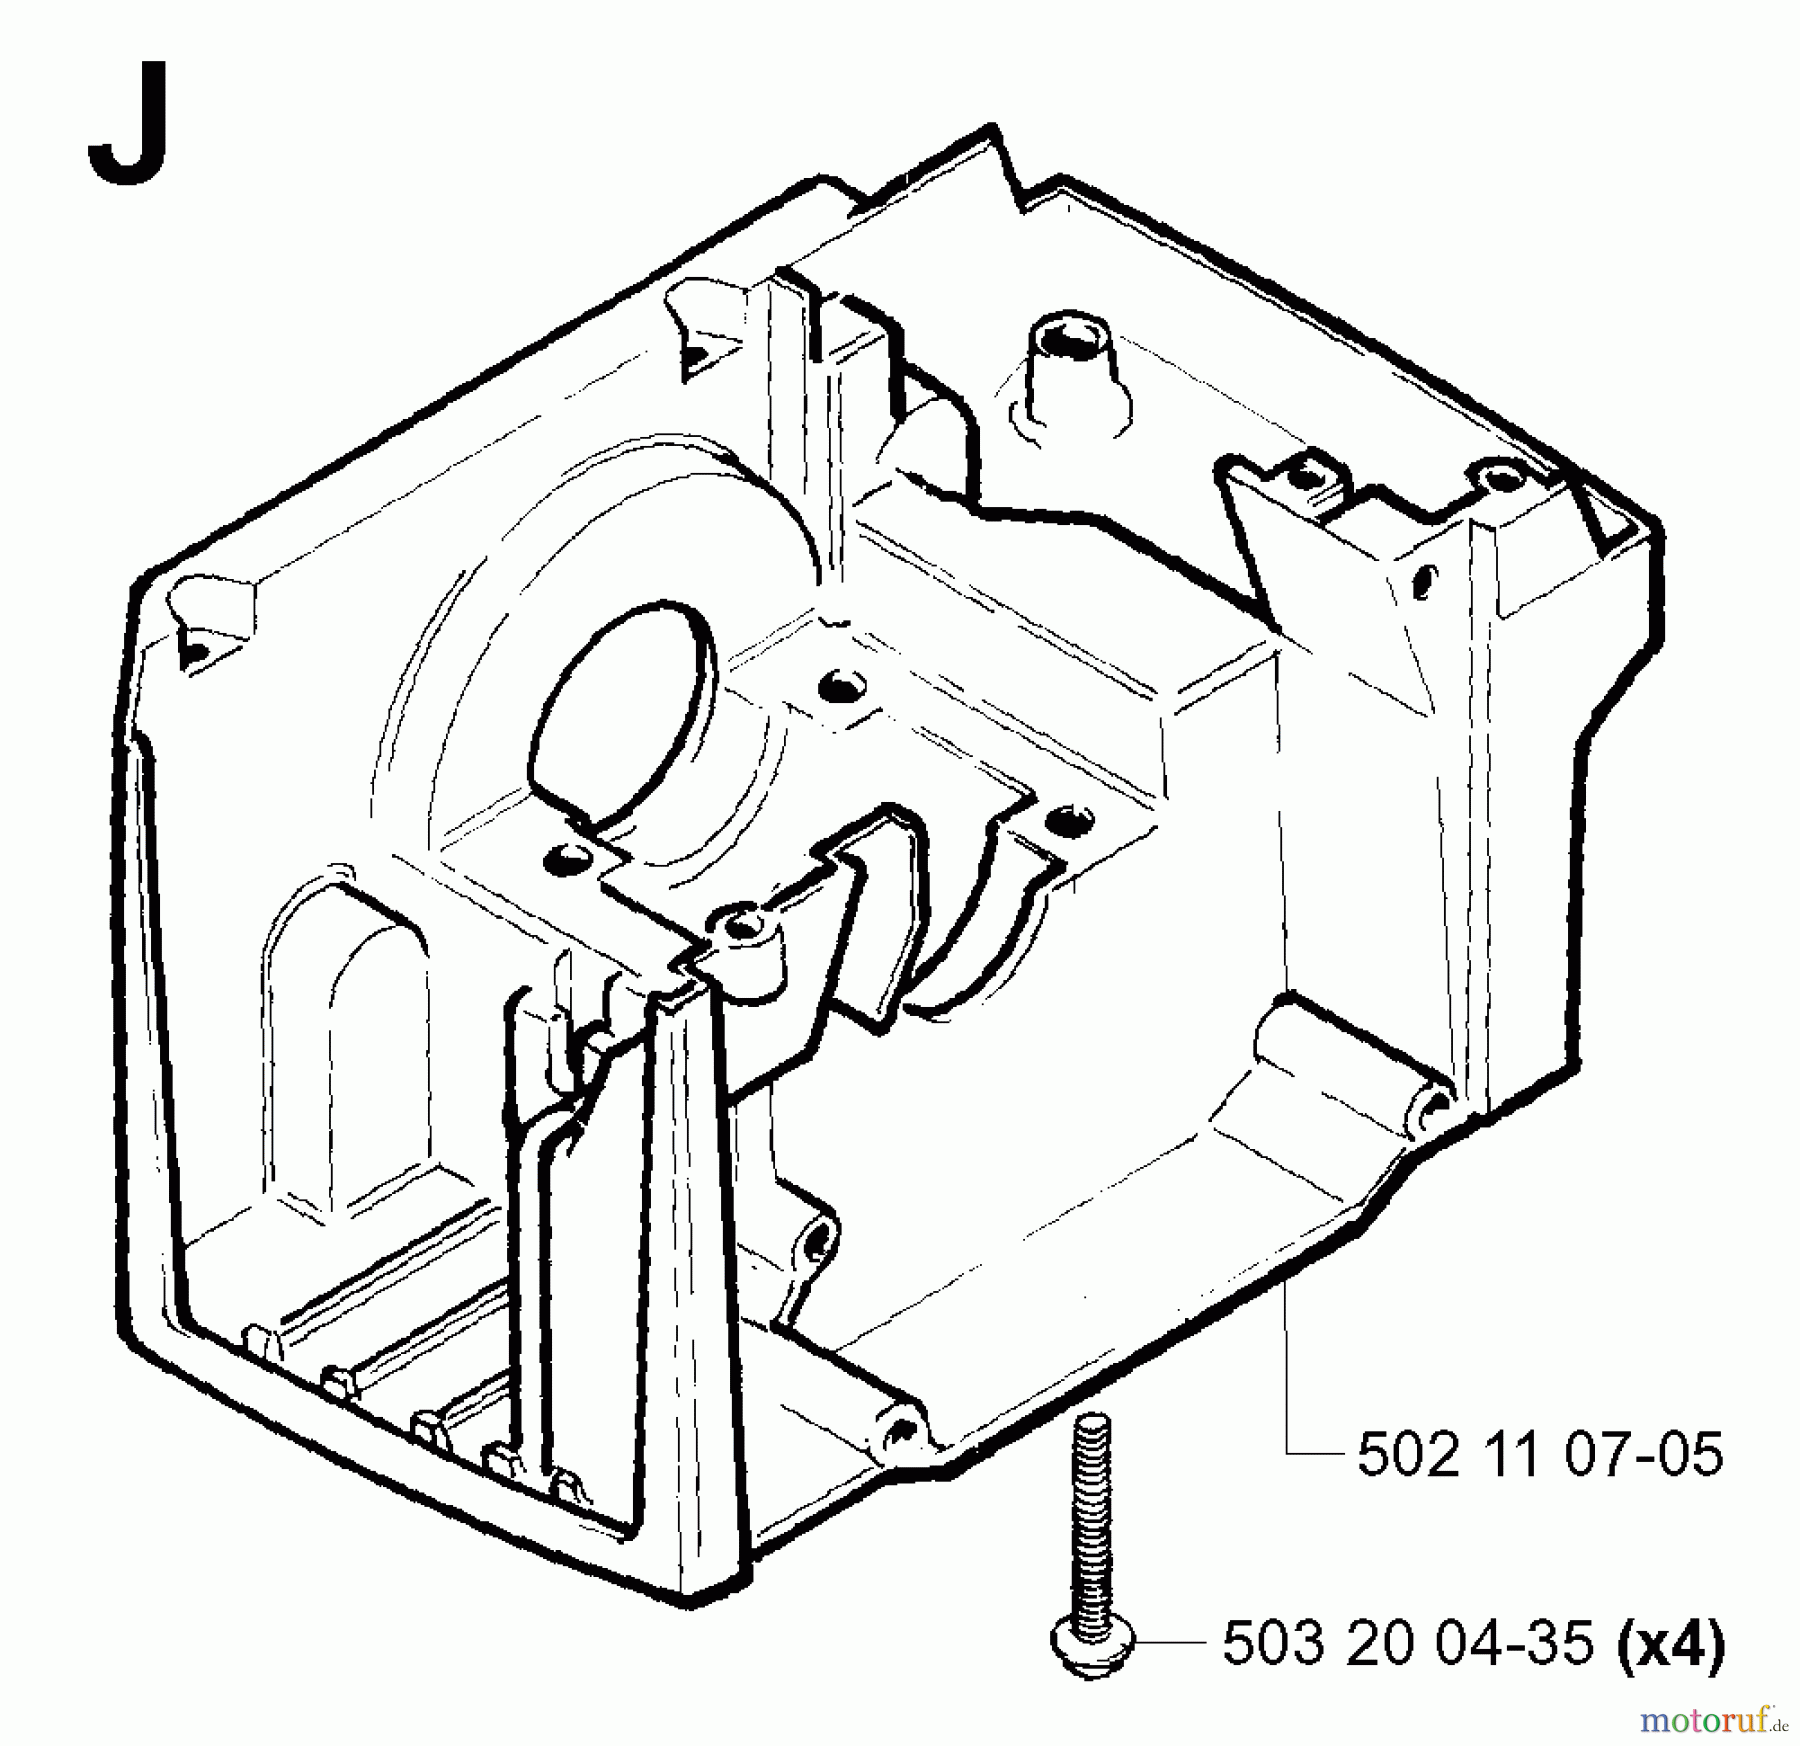  Jonsered Motorsensen, Trimmer GR50 - Jonsered String/Brush Trimmer (2001-03) CRANKCASE